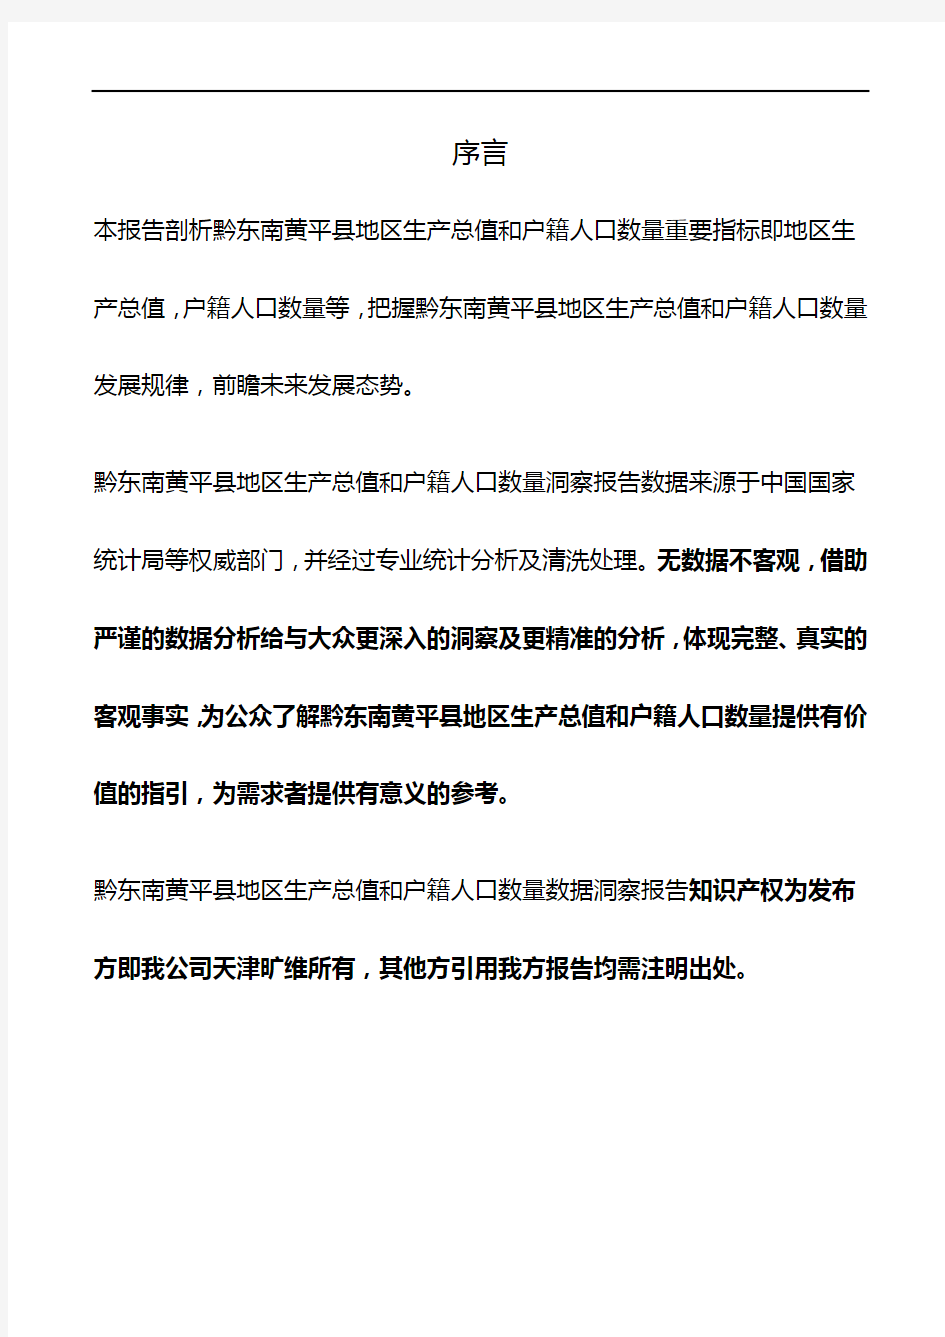 贵州省黔东南黄平县地区生产总值和户籍人口数量3年数据洞察报告2020版